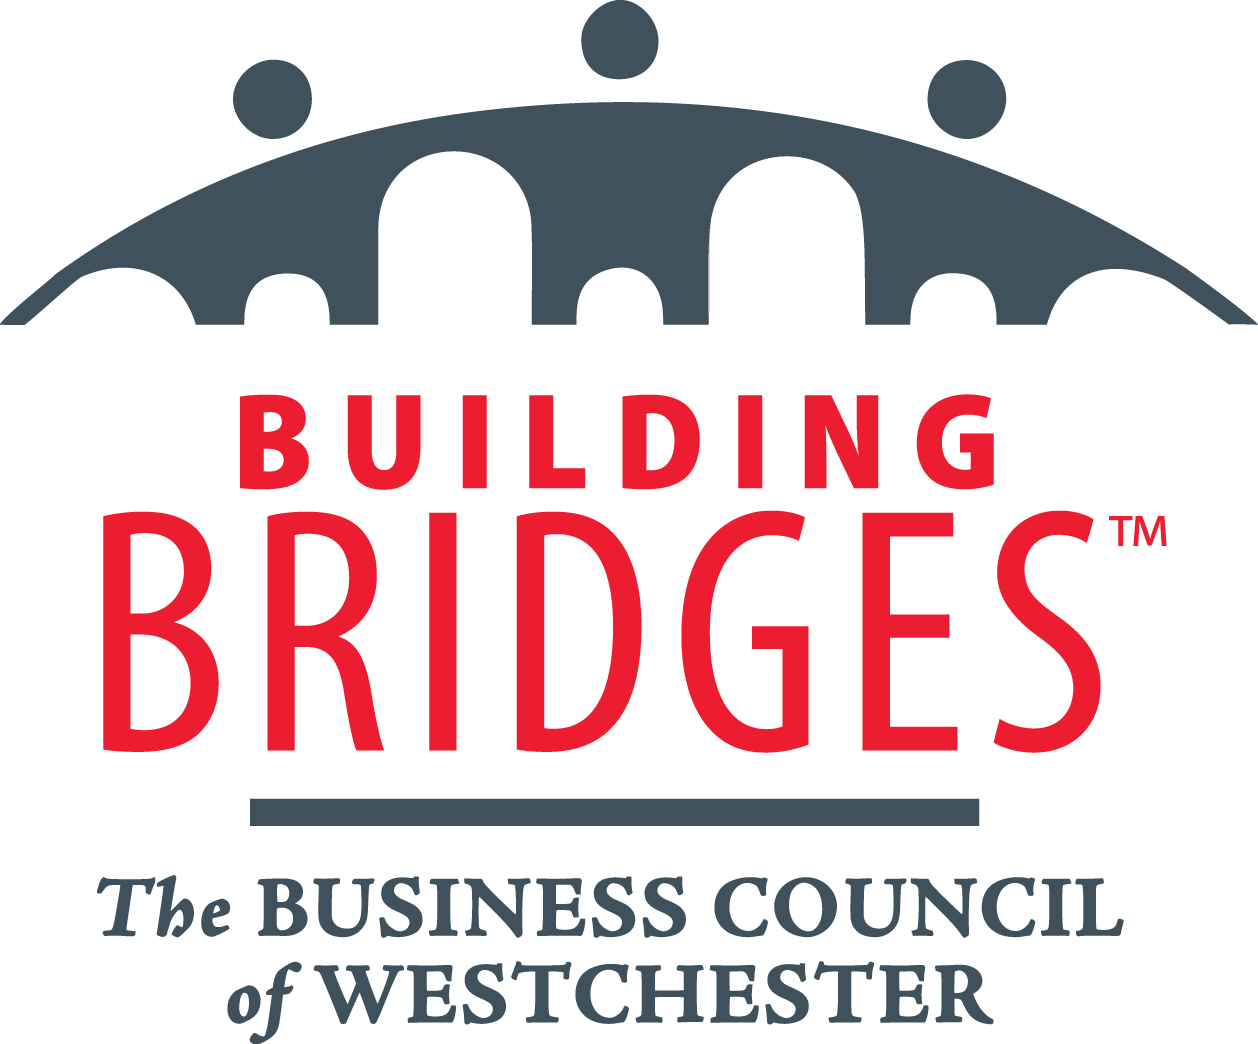 The Business Council of Westchester - Building Bridges